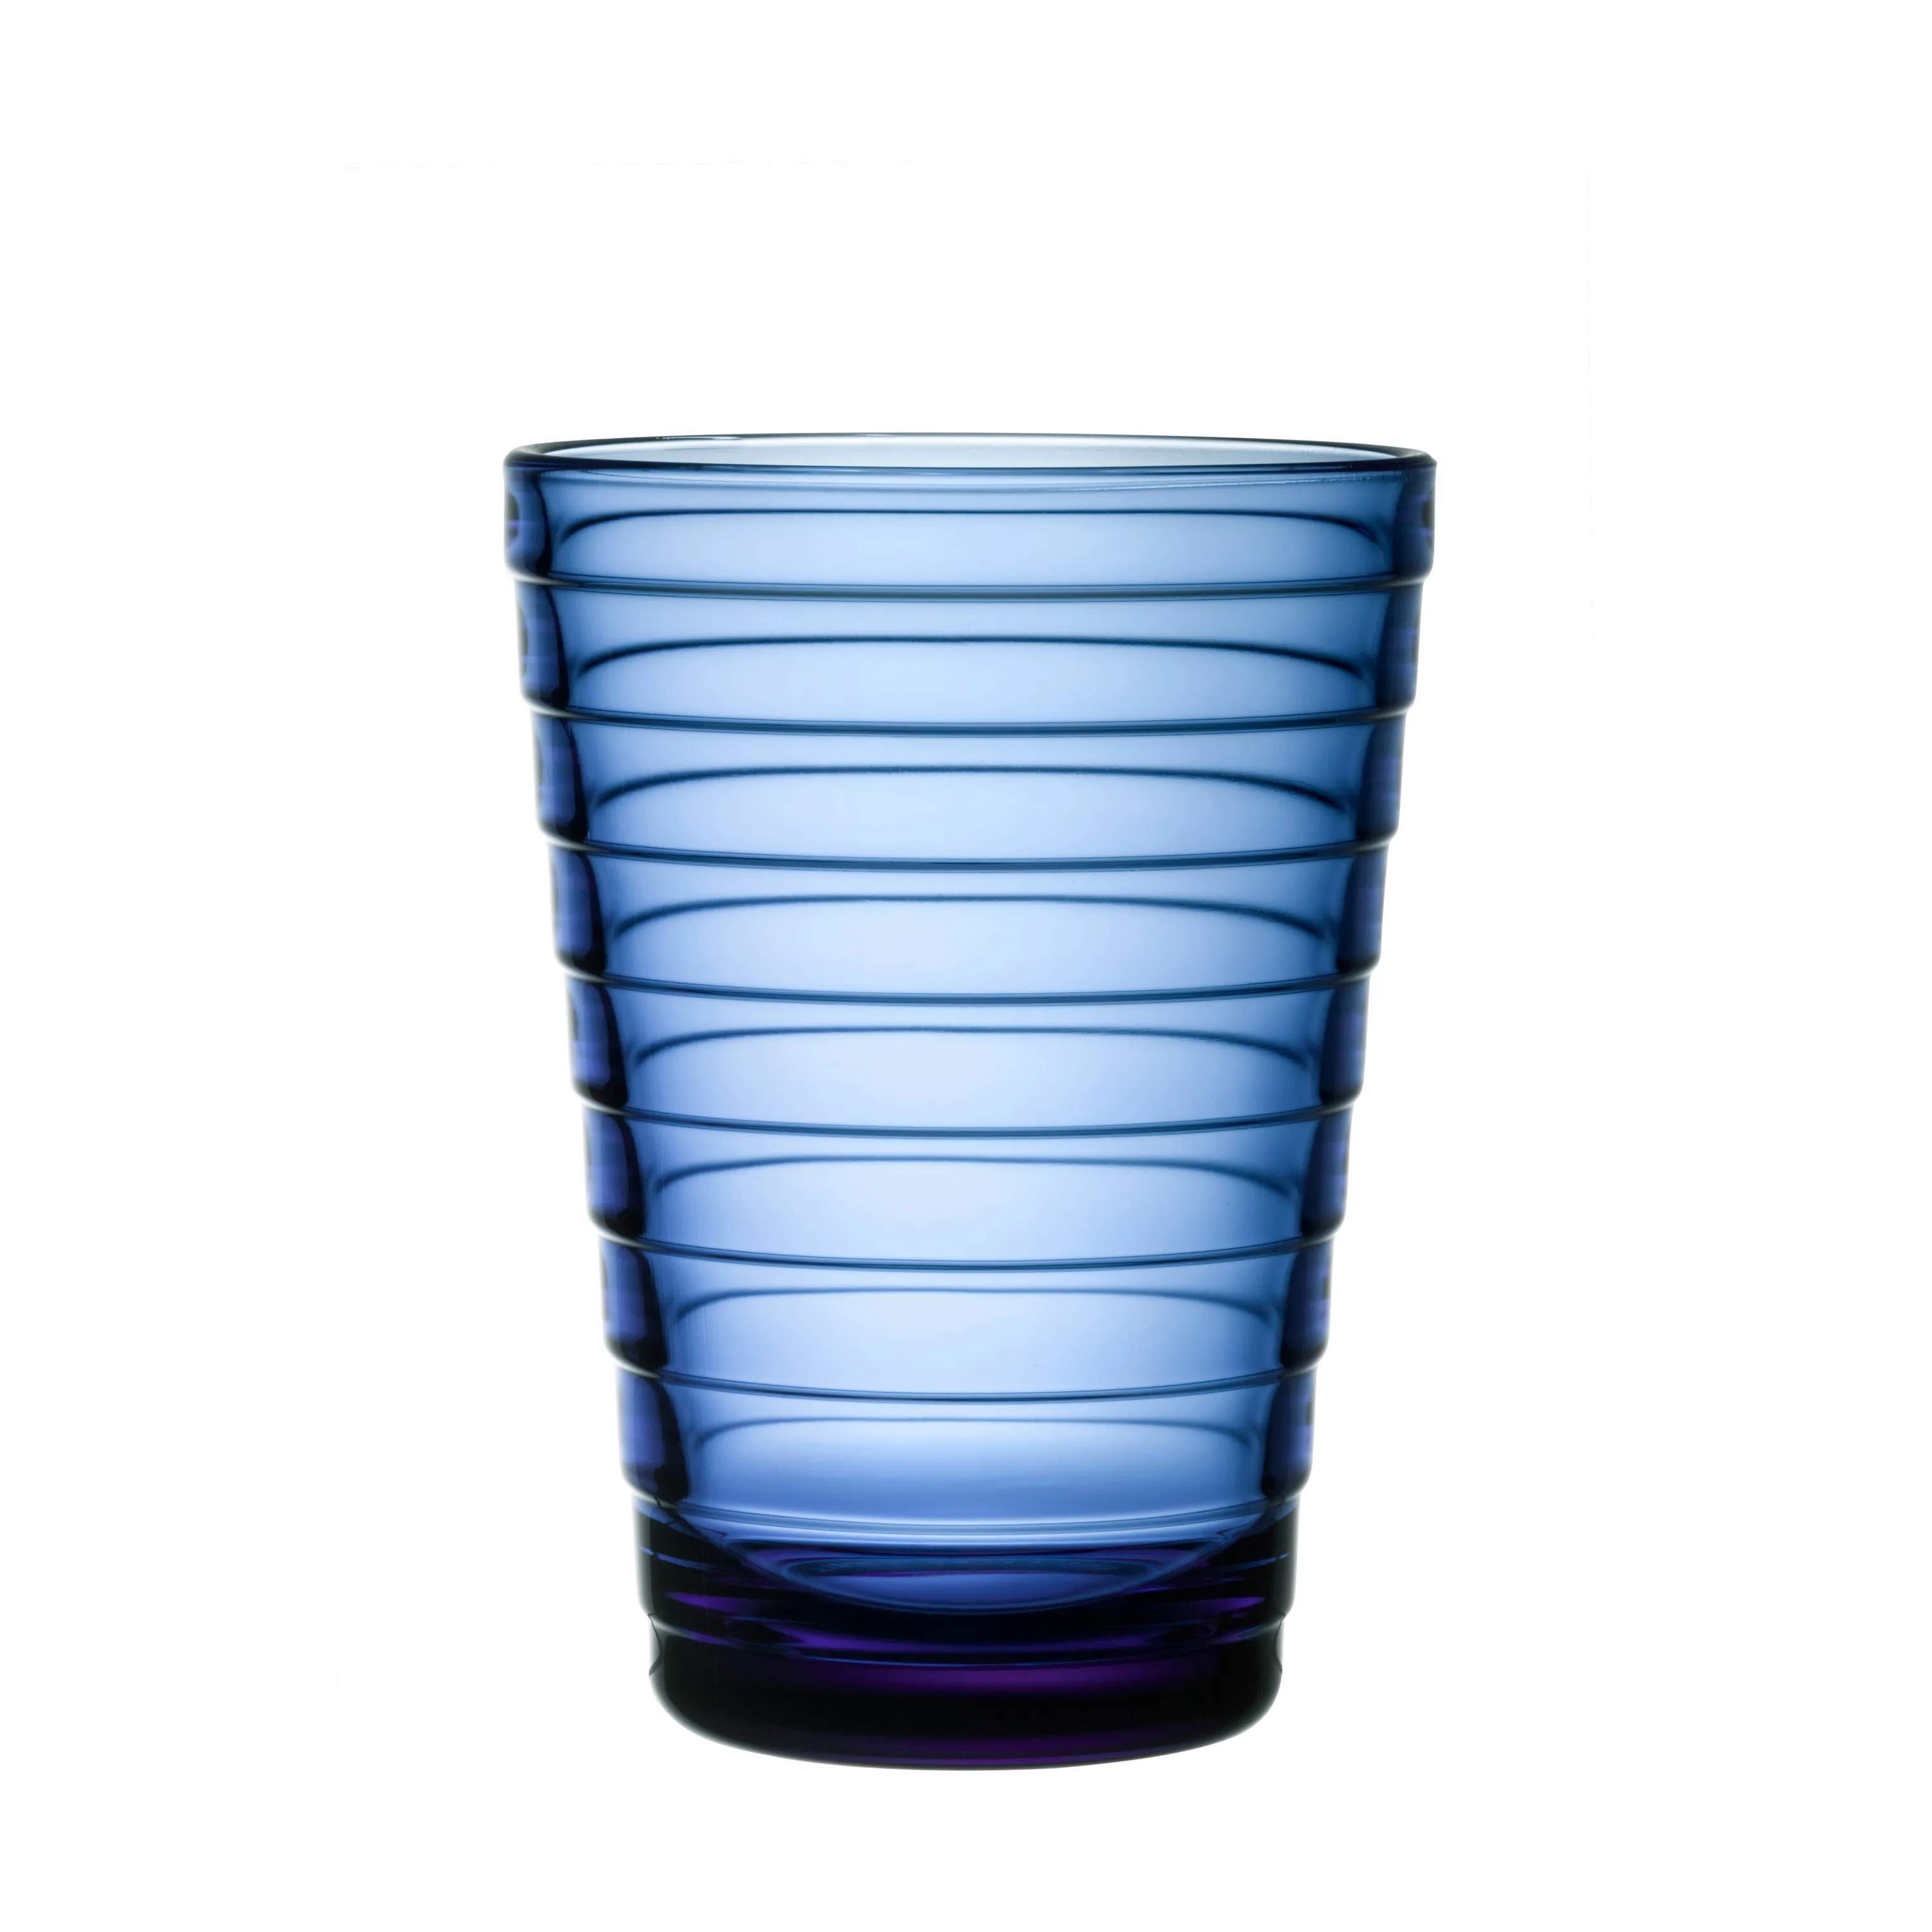 Aino Aalto Vandglas - 2 stk., ultramarineblå, large